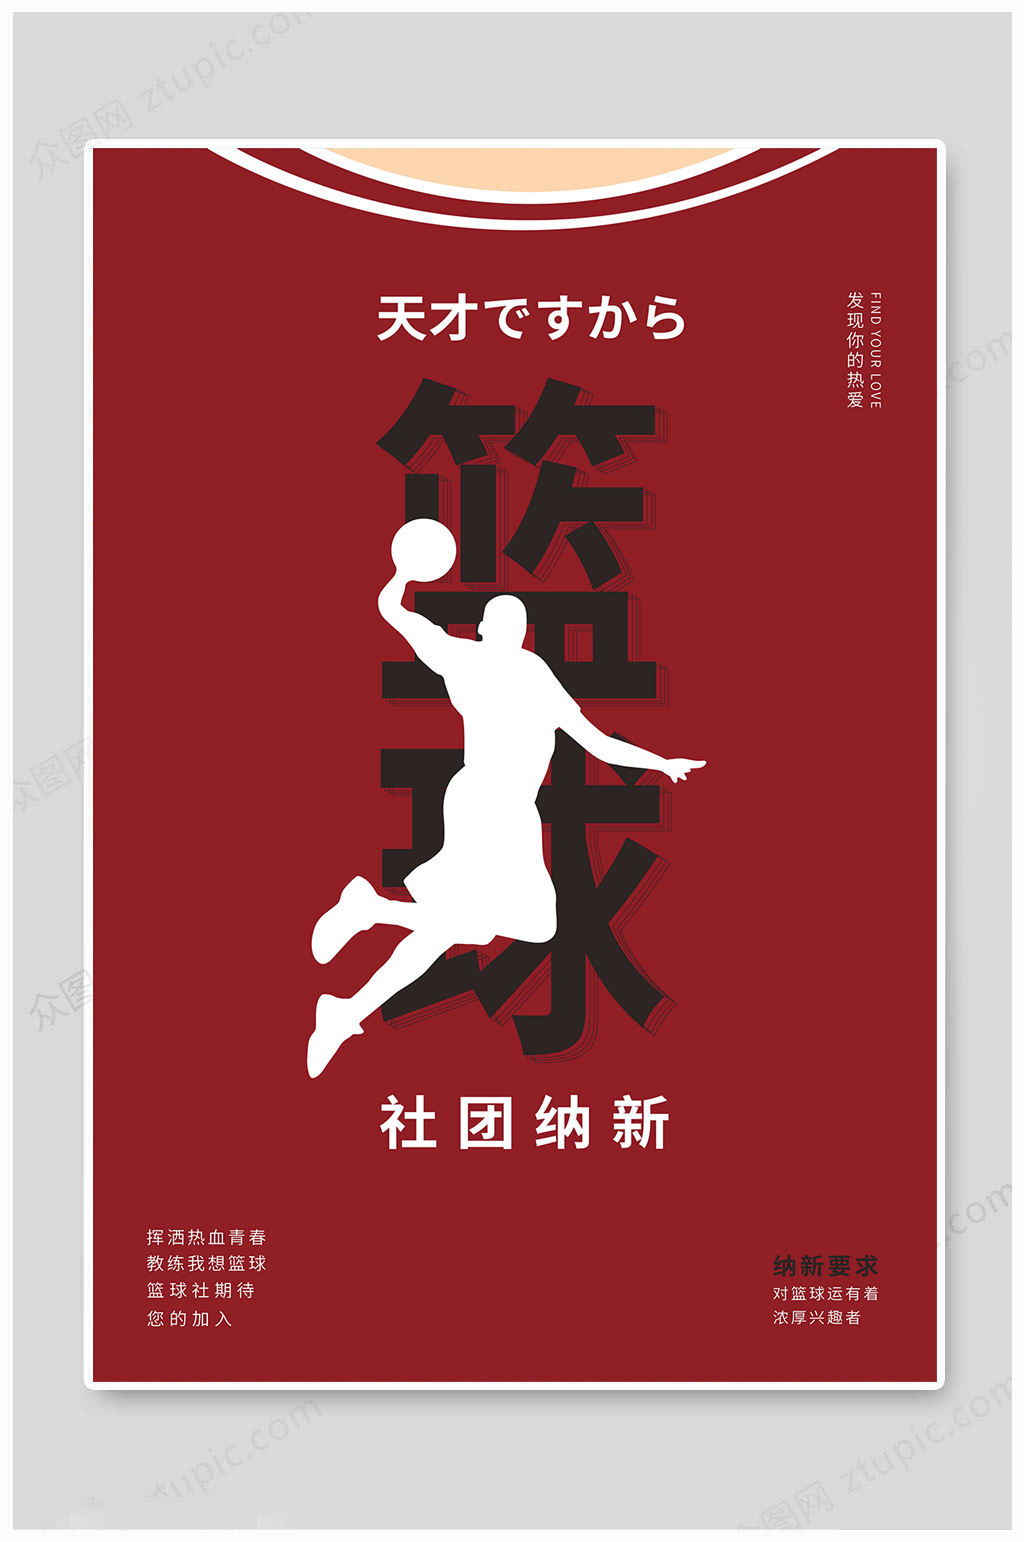 篮球社团招新海报英语图片